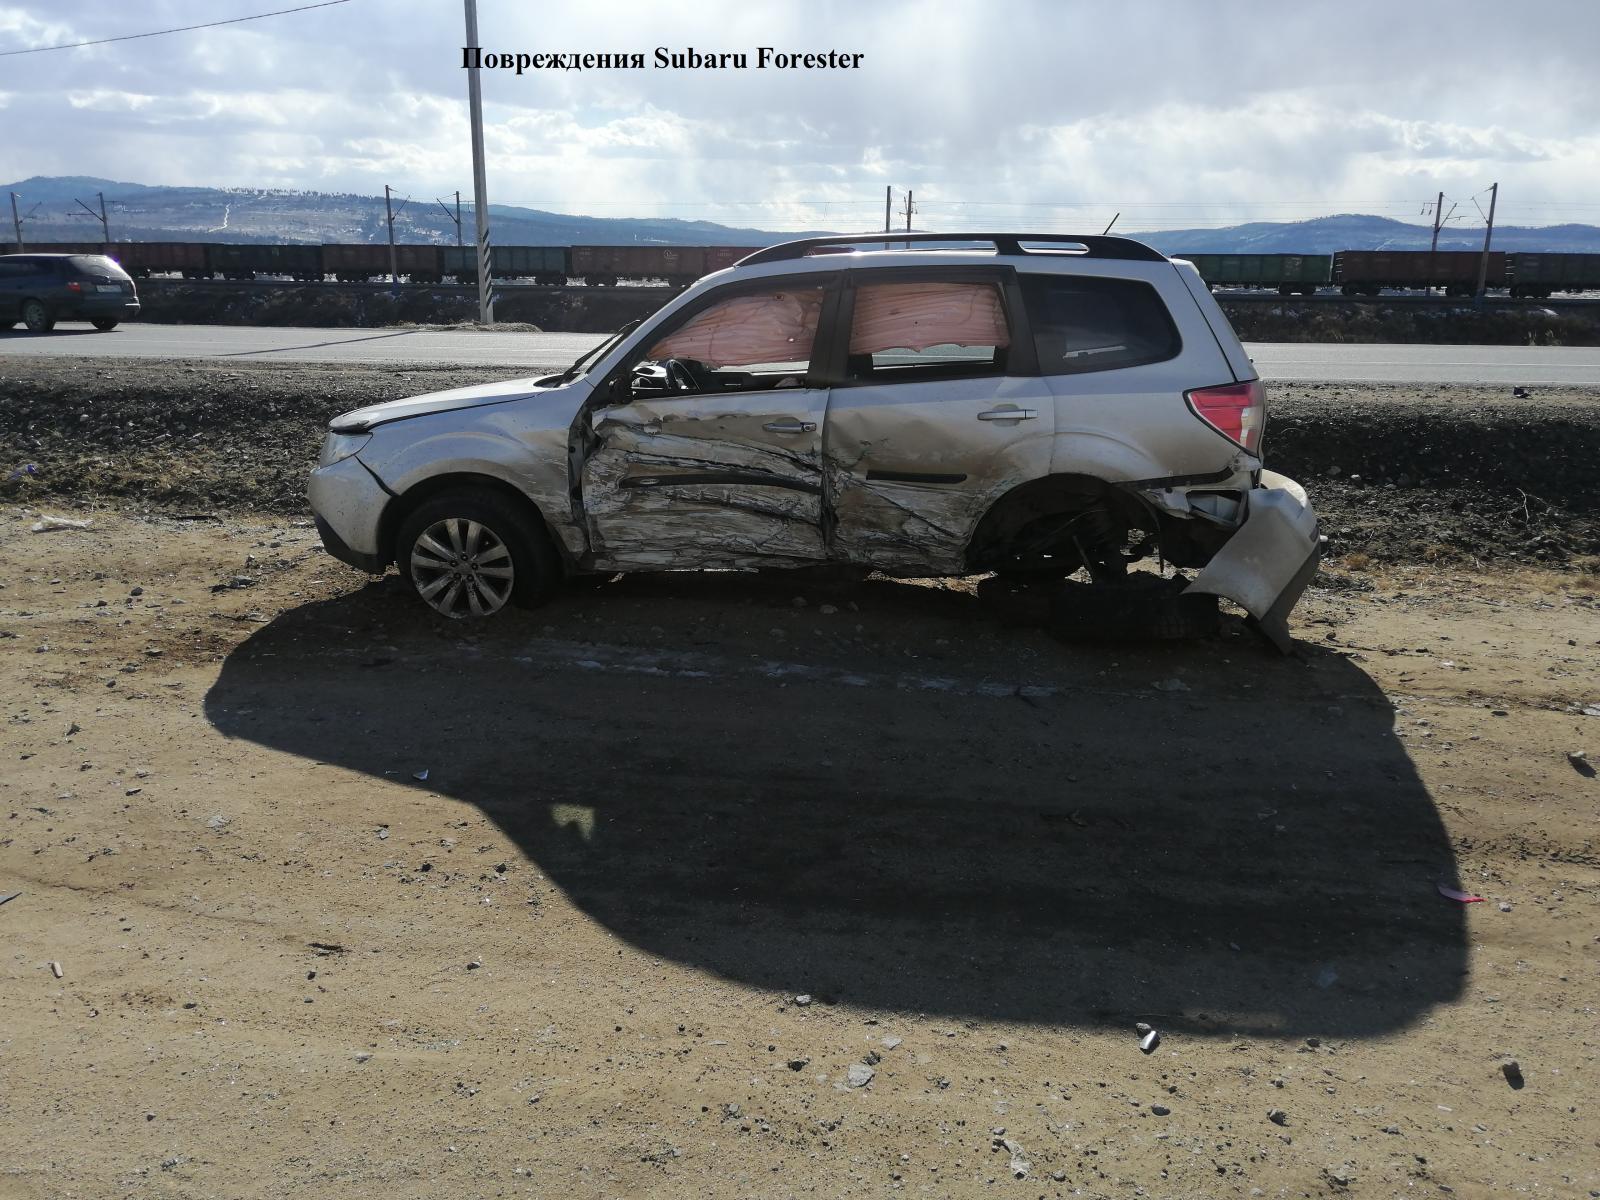 Пьяный водитель выехал на встречную и столкнулся с двумя авто в Читинском районе